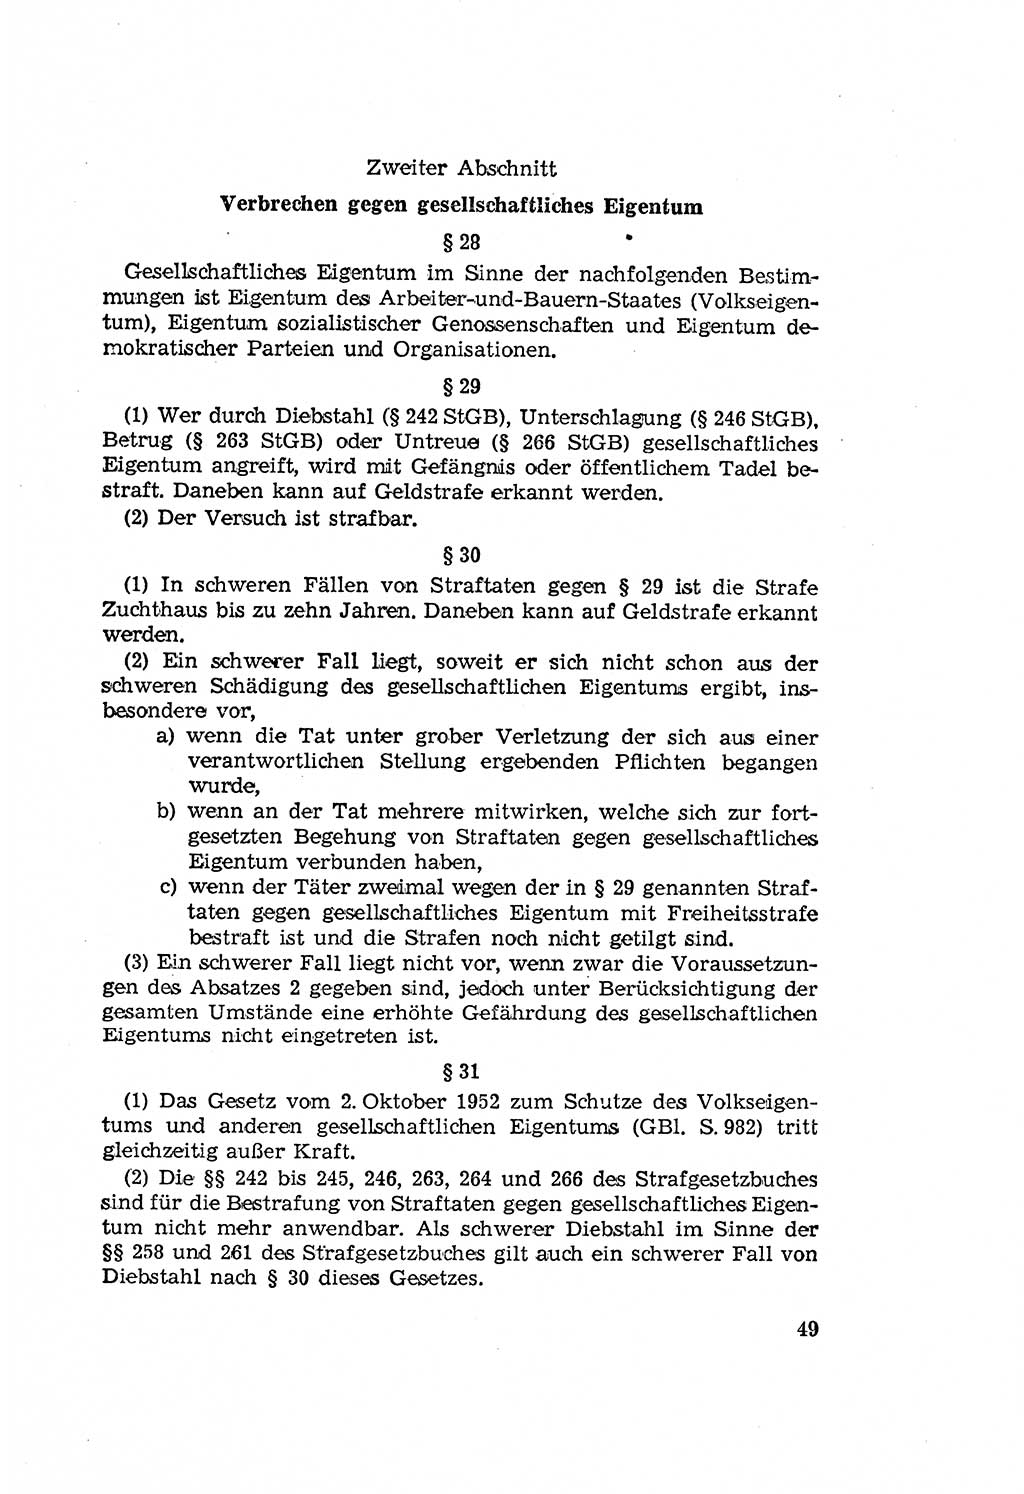 Zum Erlaß des Gesetzes zur Ergänzung des Strafgesetzbuches (StGB), Strafergänzungsgesetz (StEG) [Deutsche Demokratische Republik (DDR)] 1957, Seite 49 (StGB StEG DDR 1957, S. 49)